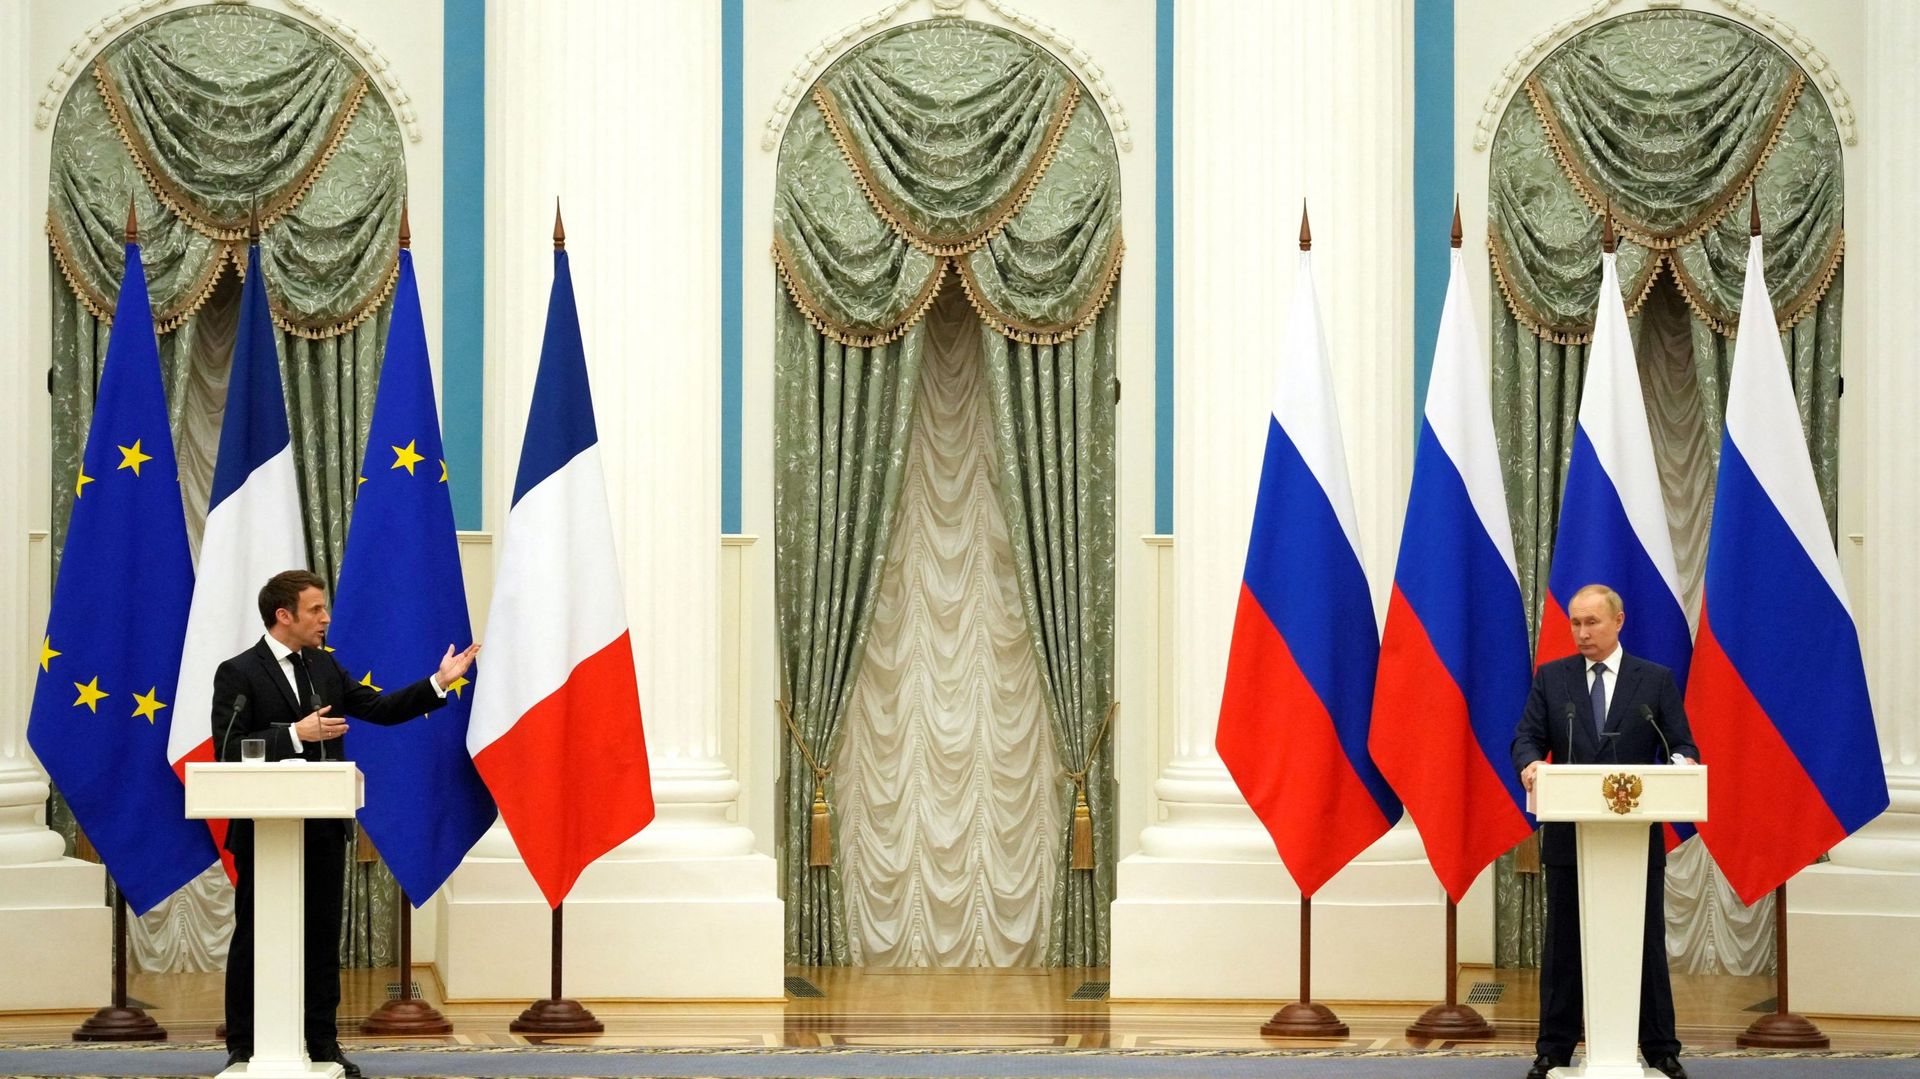 Emmanuel Macron et Vladimir Poutine lors d'une rencontre à Moscou la semaine dernière.